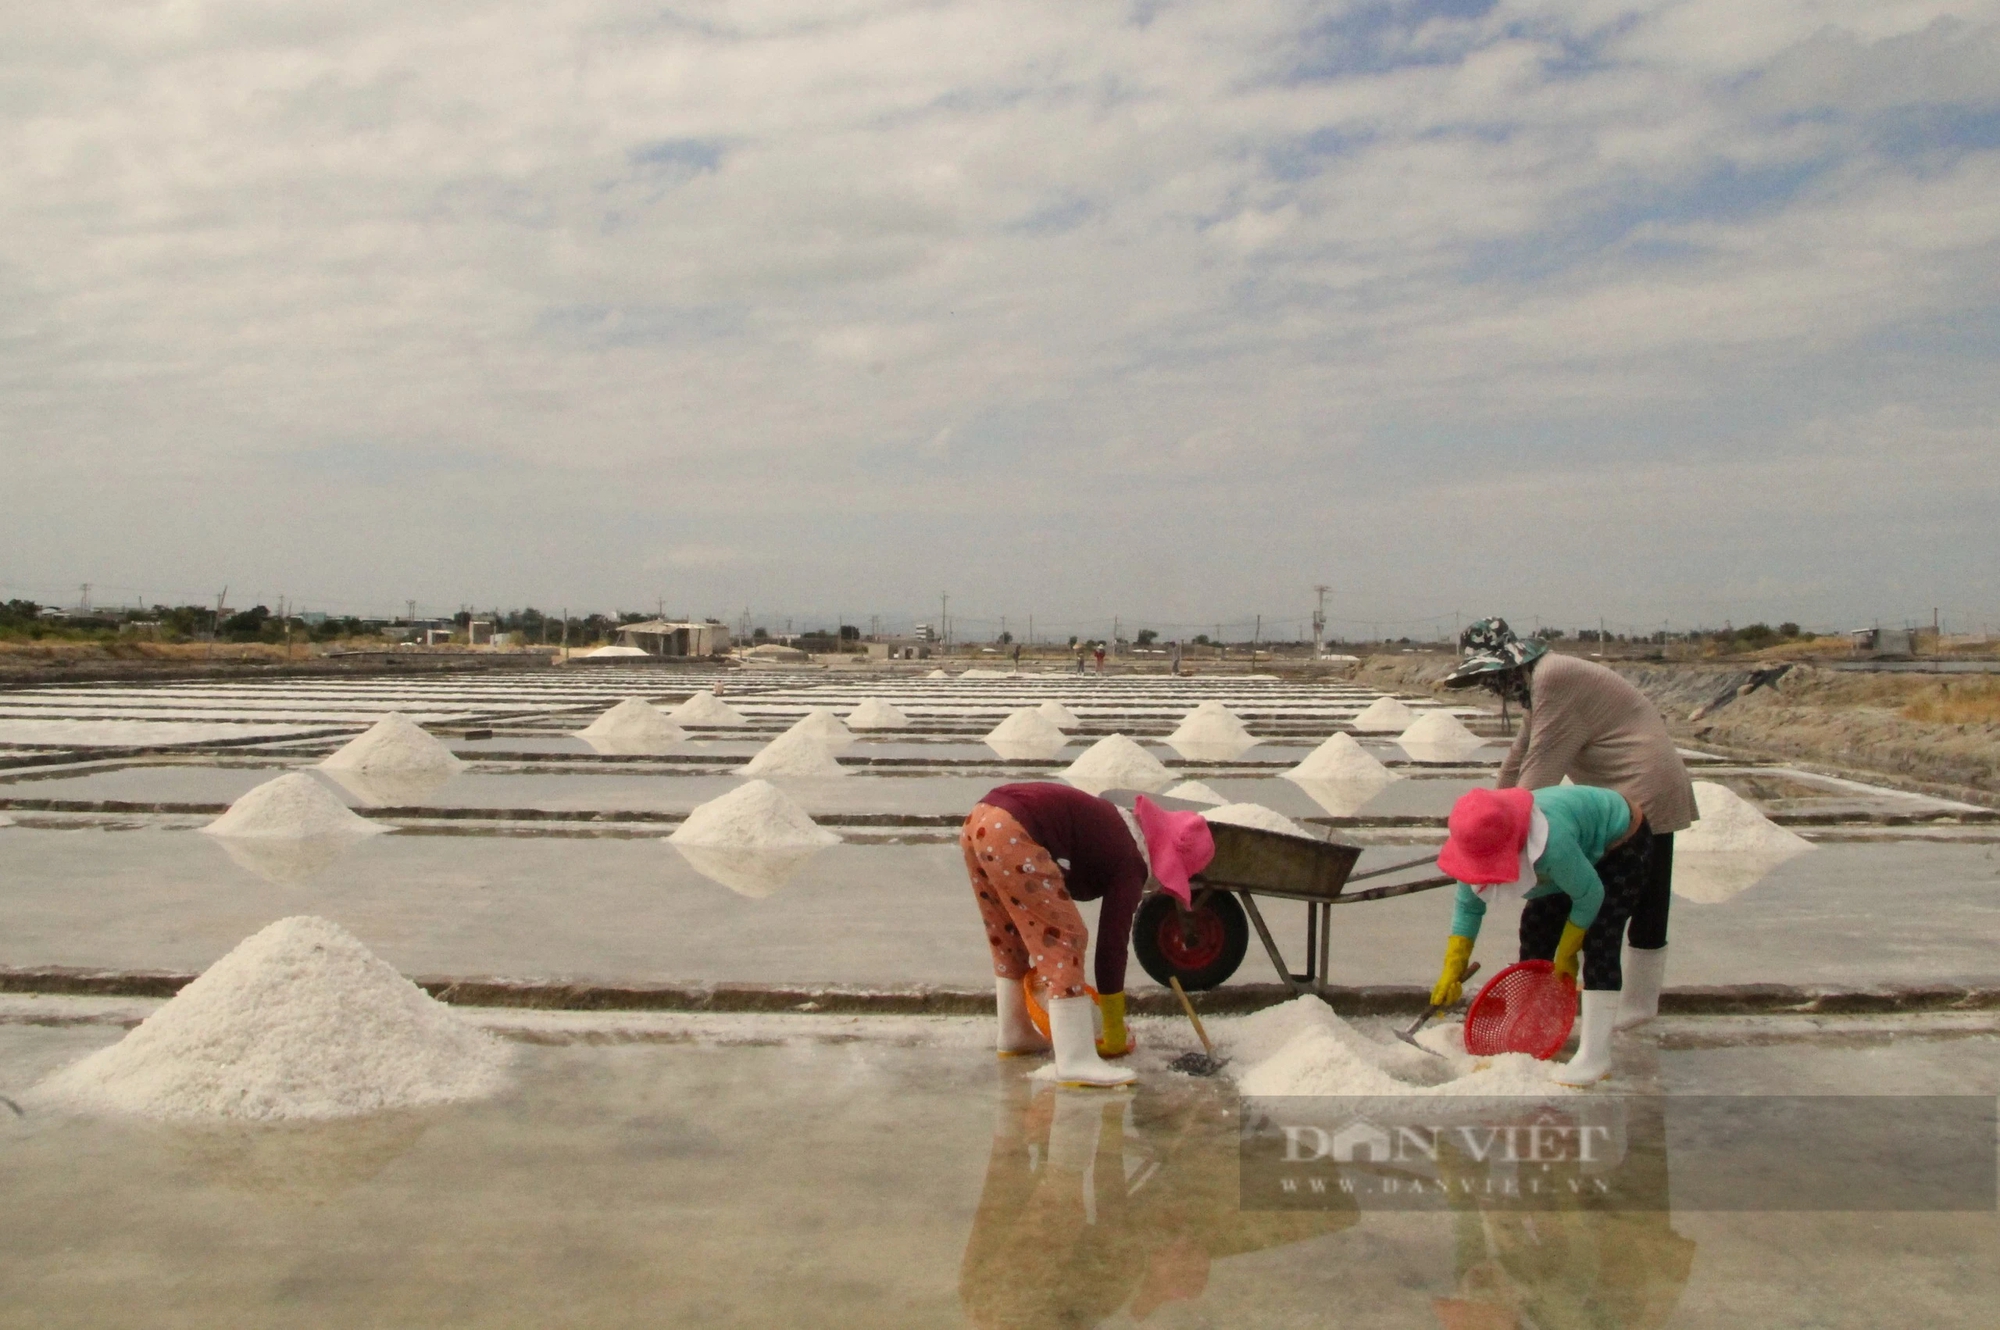 Diêm dân Ninh Thuận đầu năm ra đồng thu hoạch muối, ai cũng vui vì sản lượng tăng - Ảnh 3.